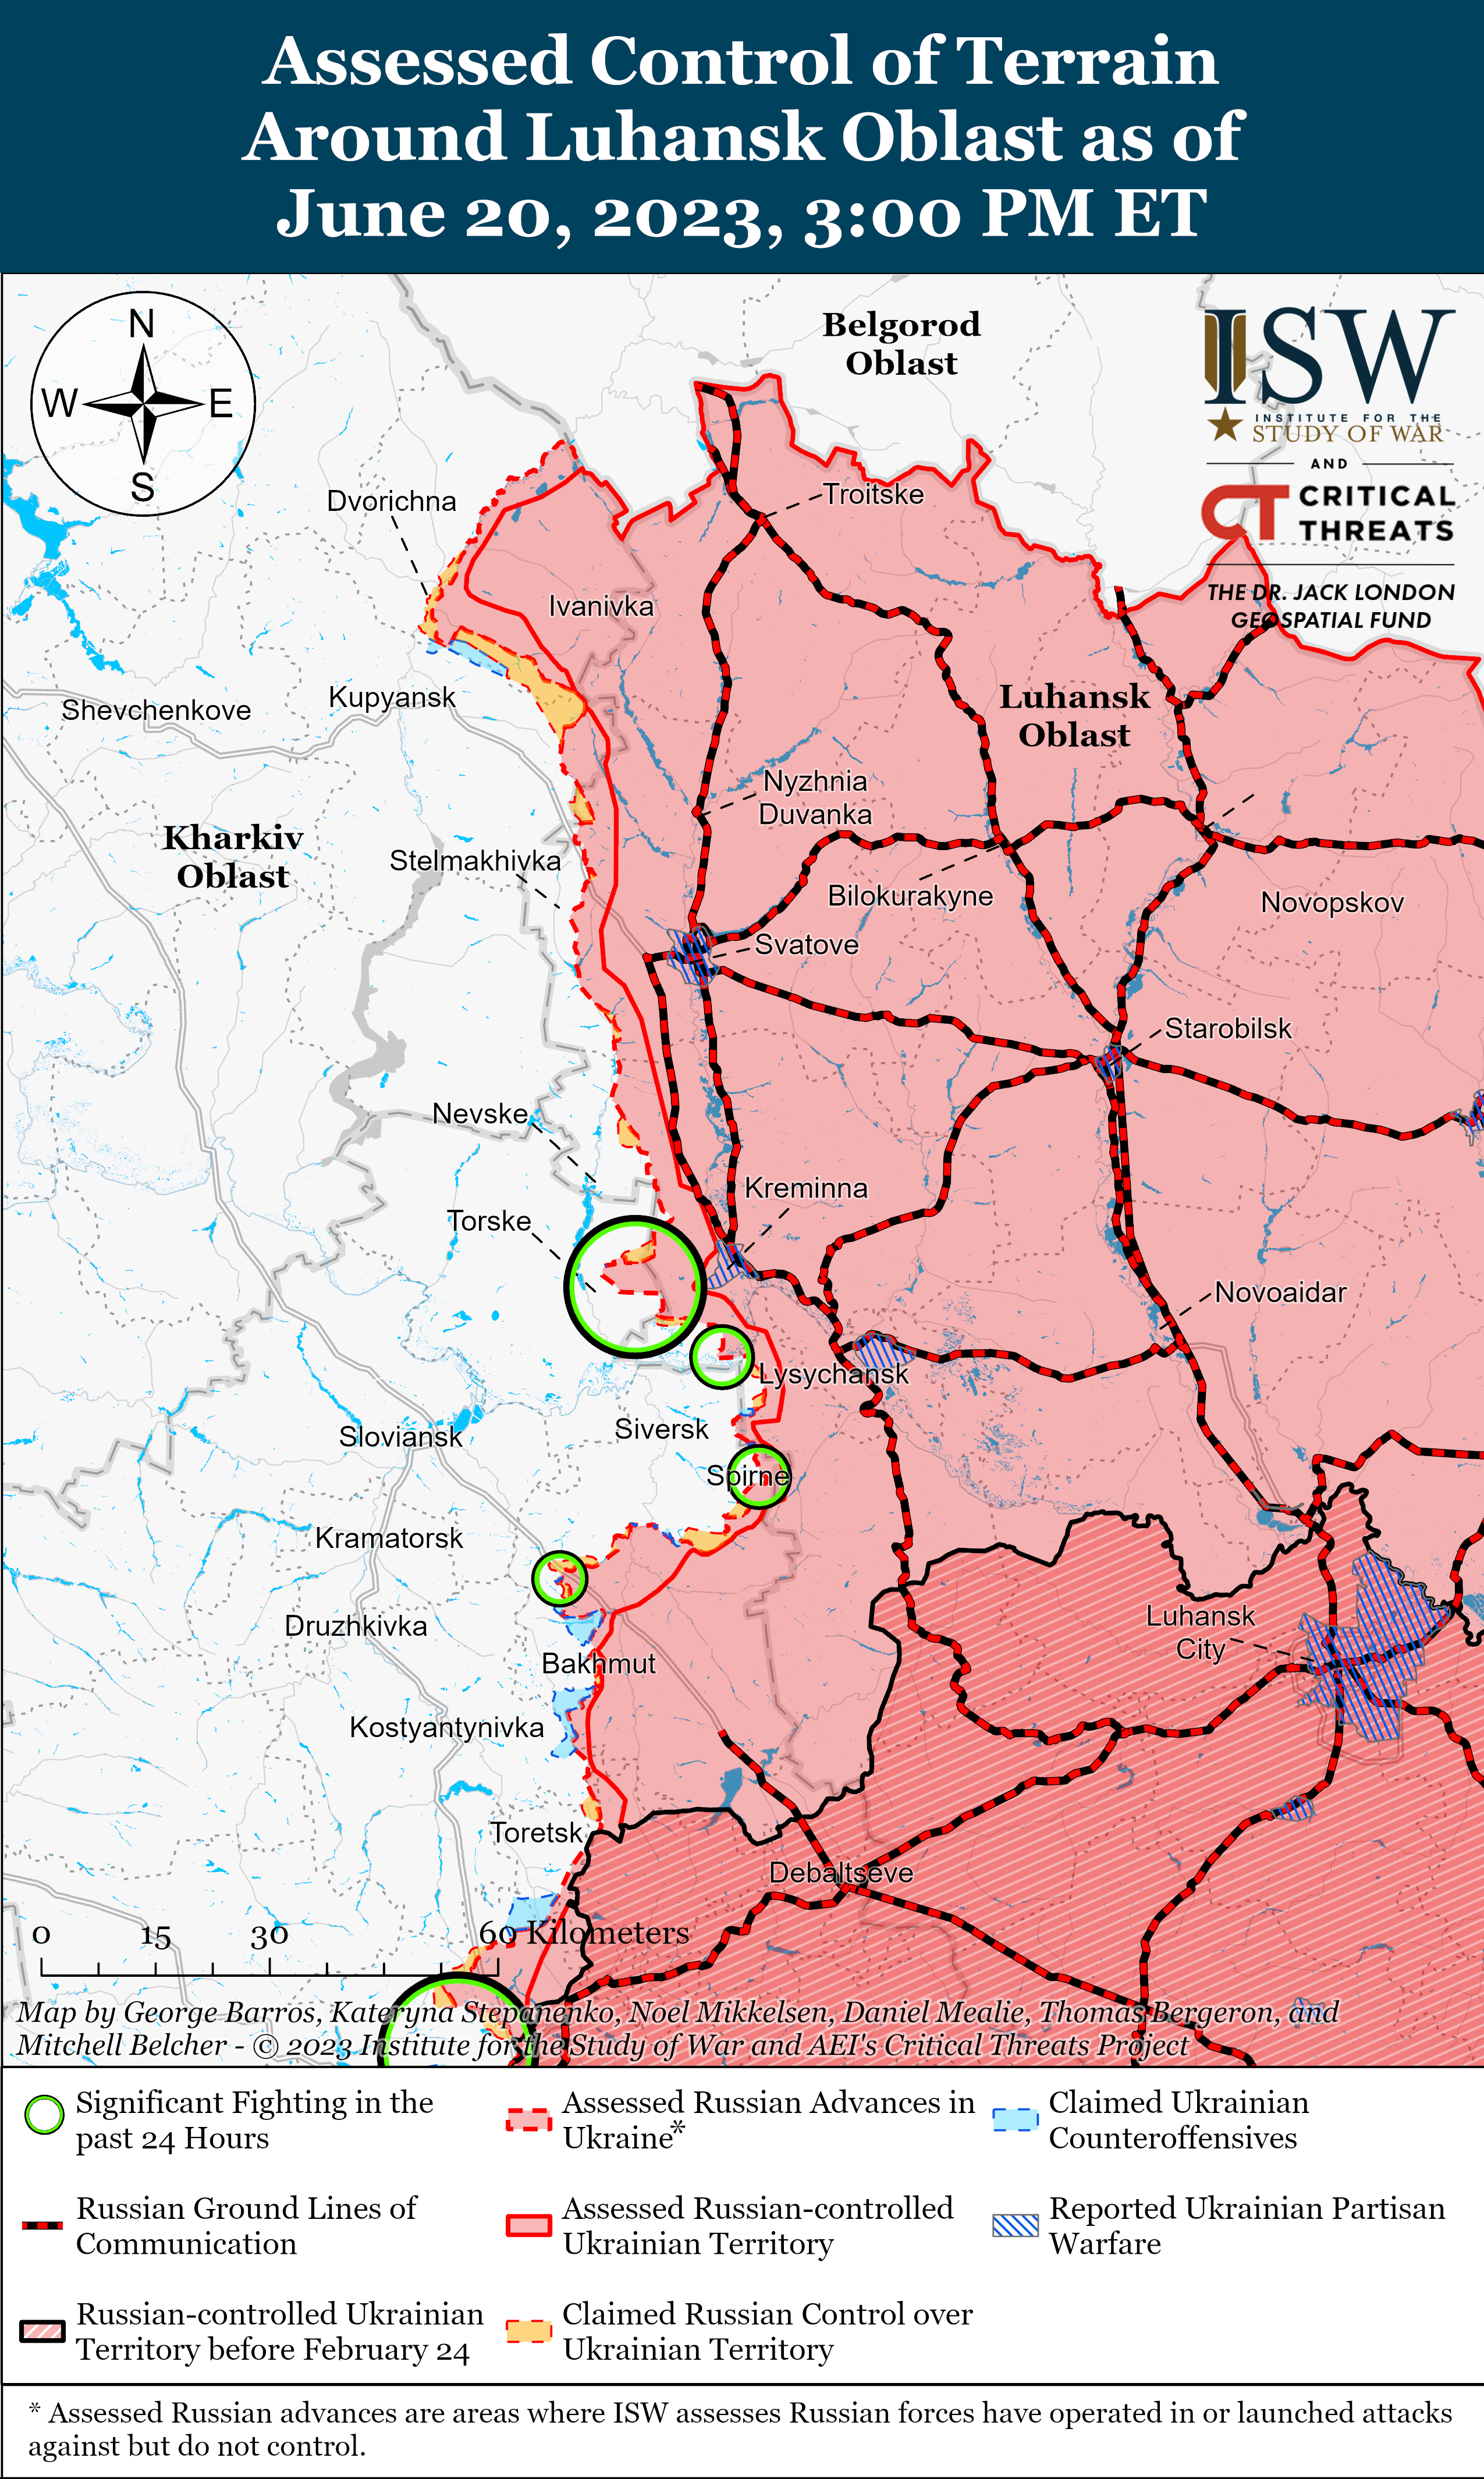 На границе Запорожской и Донецкой областей идут тяжелые бои: карты ISW